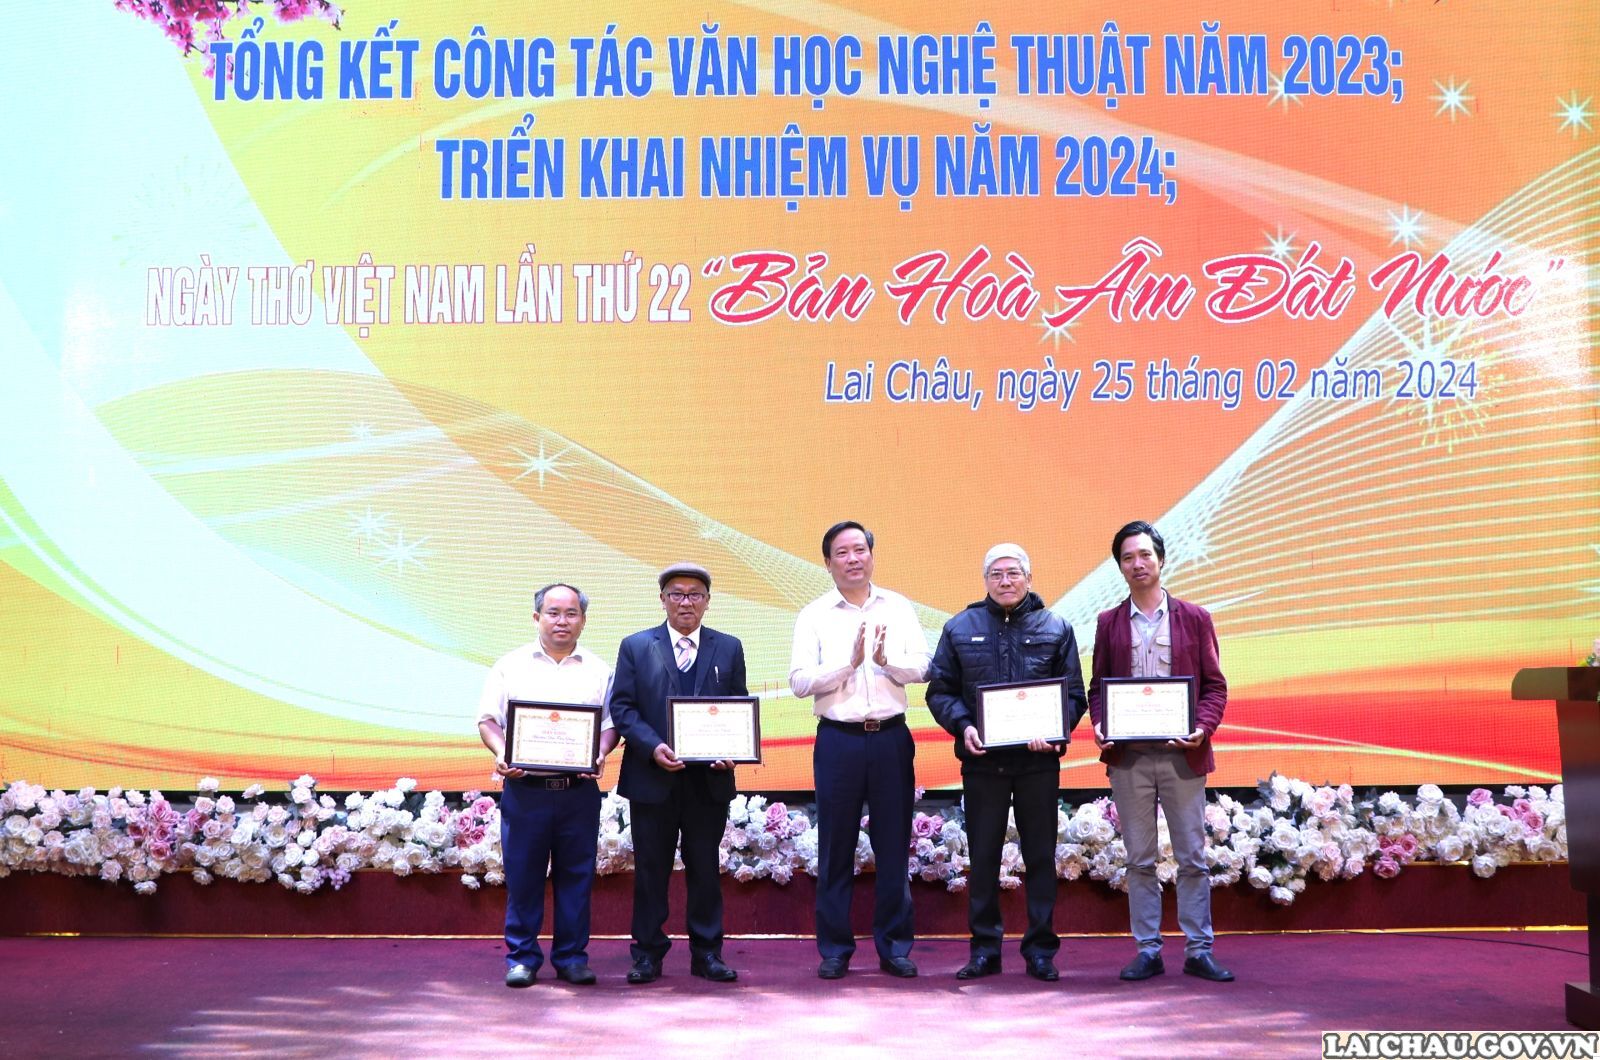 Hội nghị triển khai nhiệm vụ công tác Hội Văn học Nghệ thuật năm 2024 và Ngày thơ Việt Nam